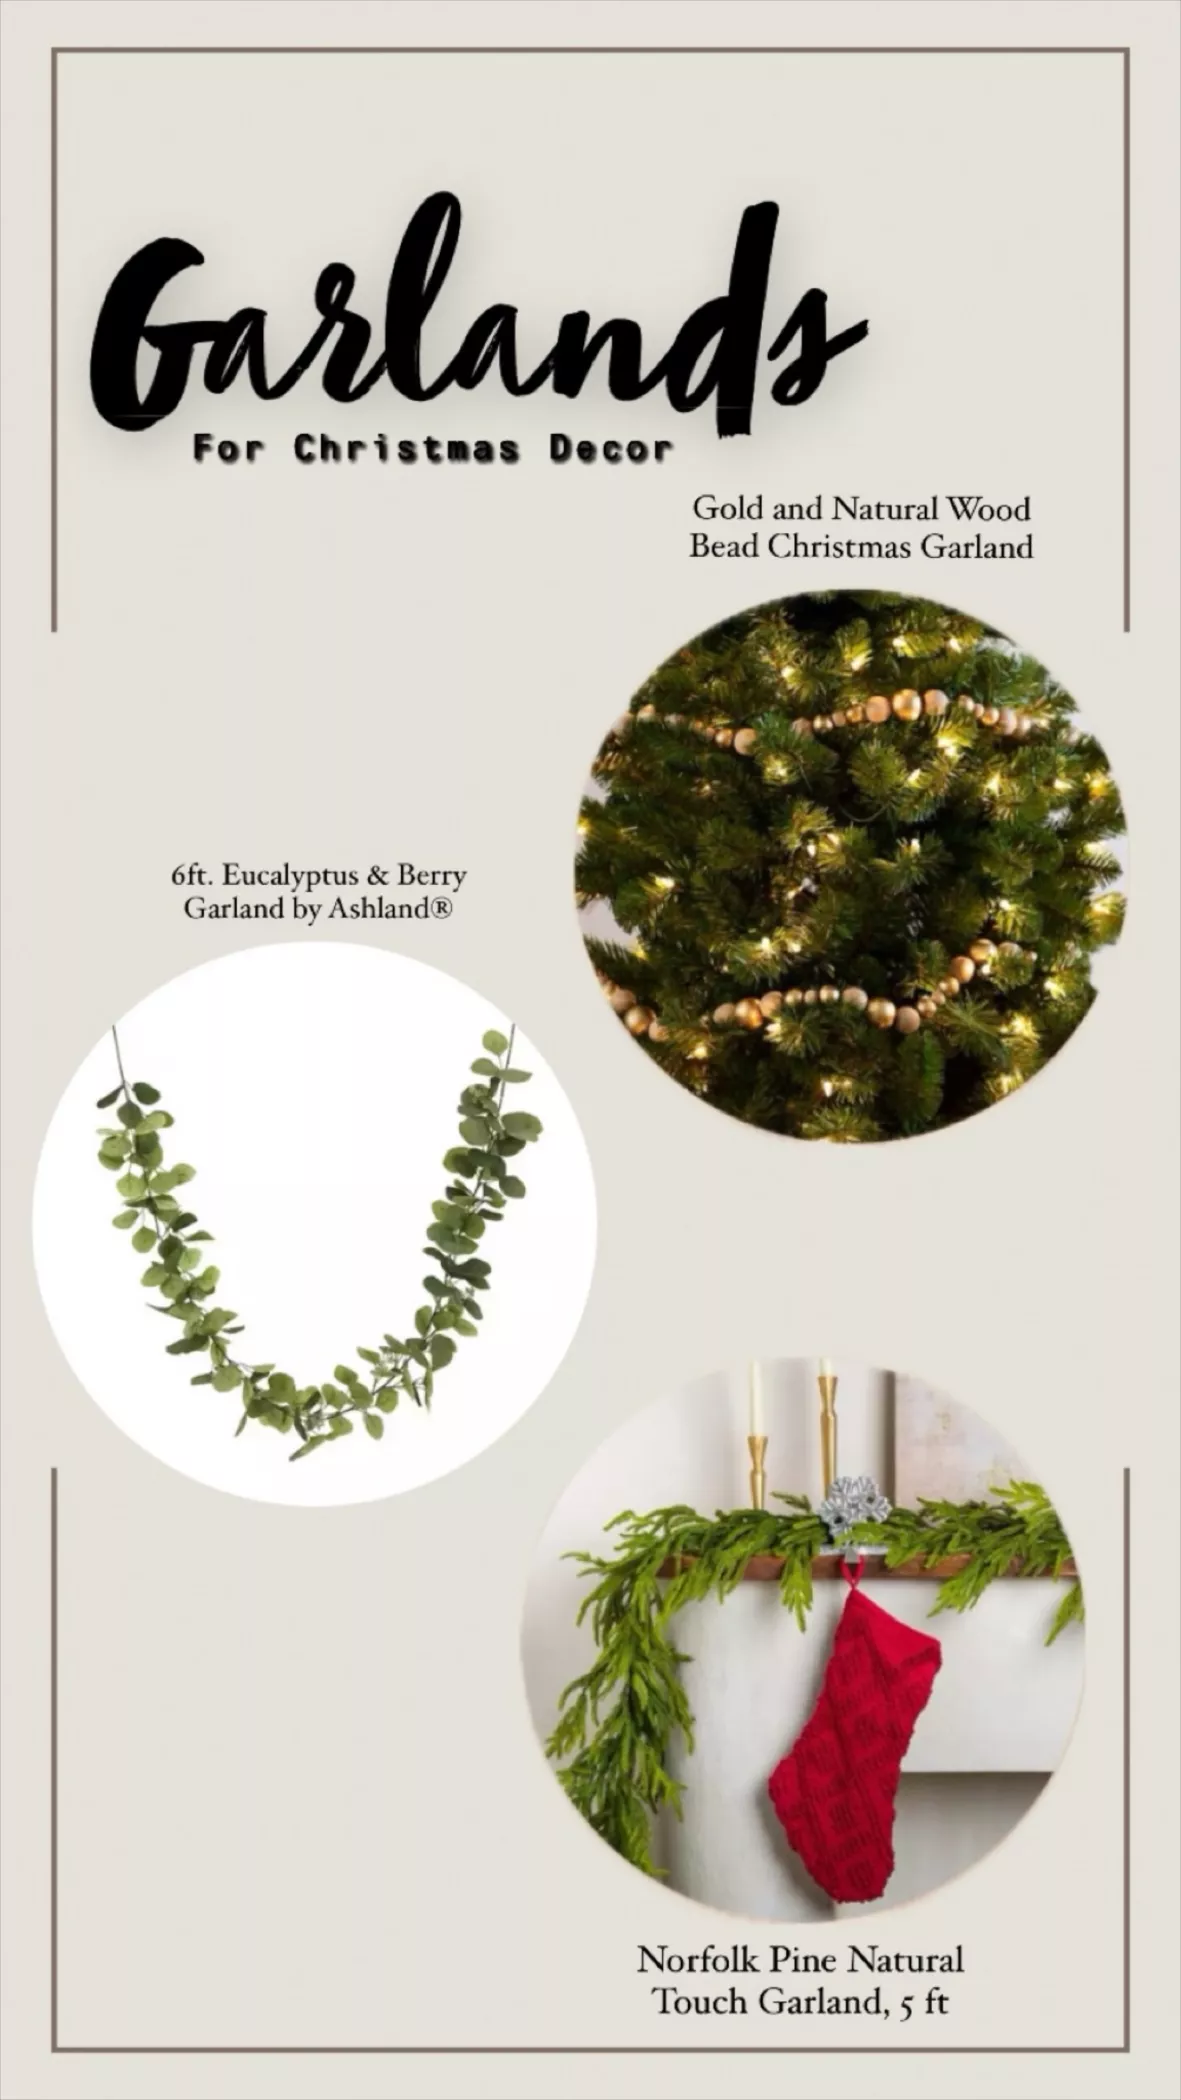 Gold and Natural Wood Bead Christmas Garland